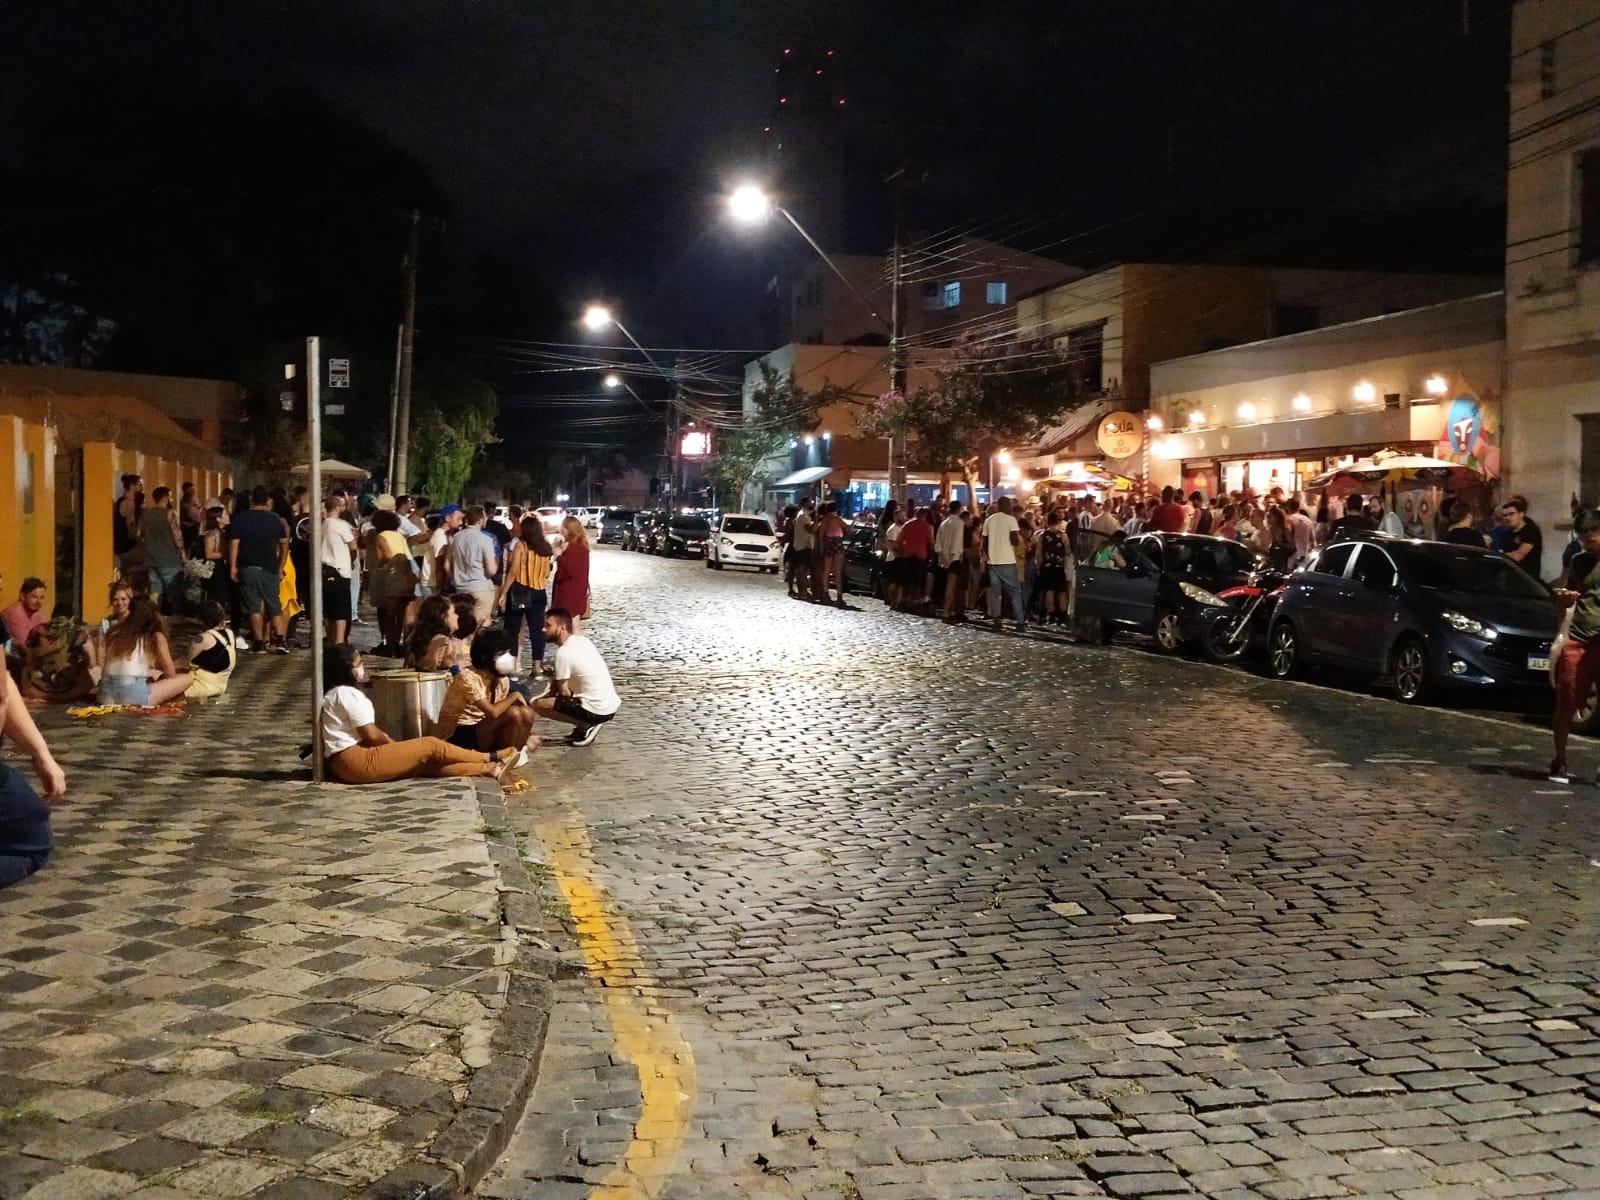 4 bares em Curitiba para fechar a noite do melhor jeito possível